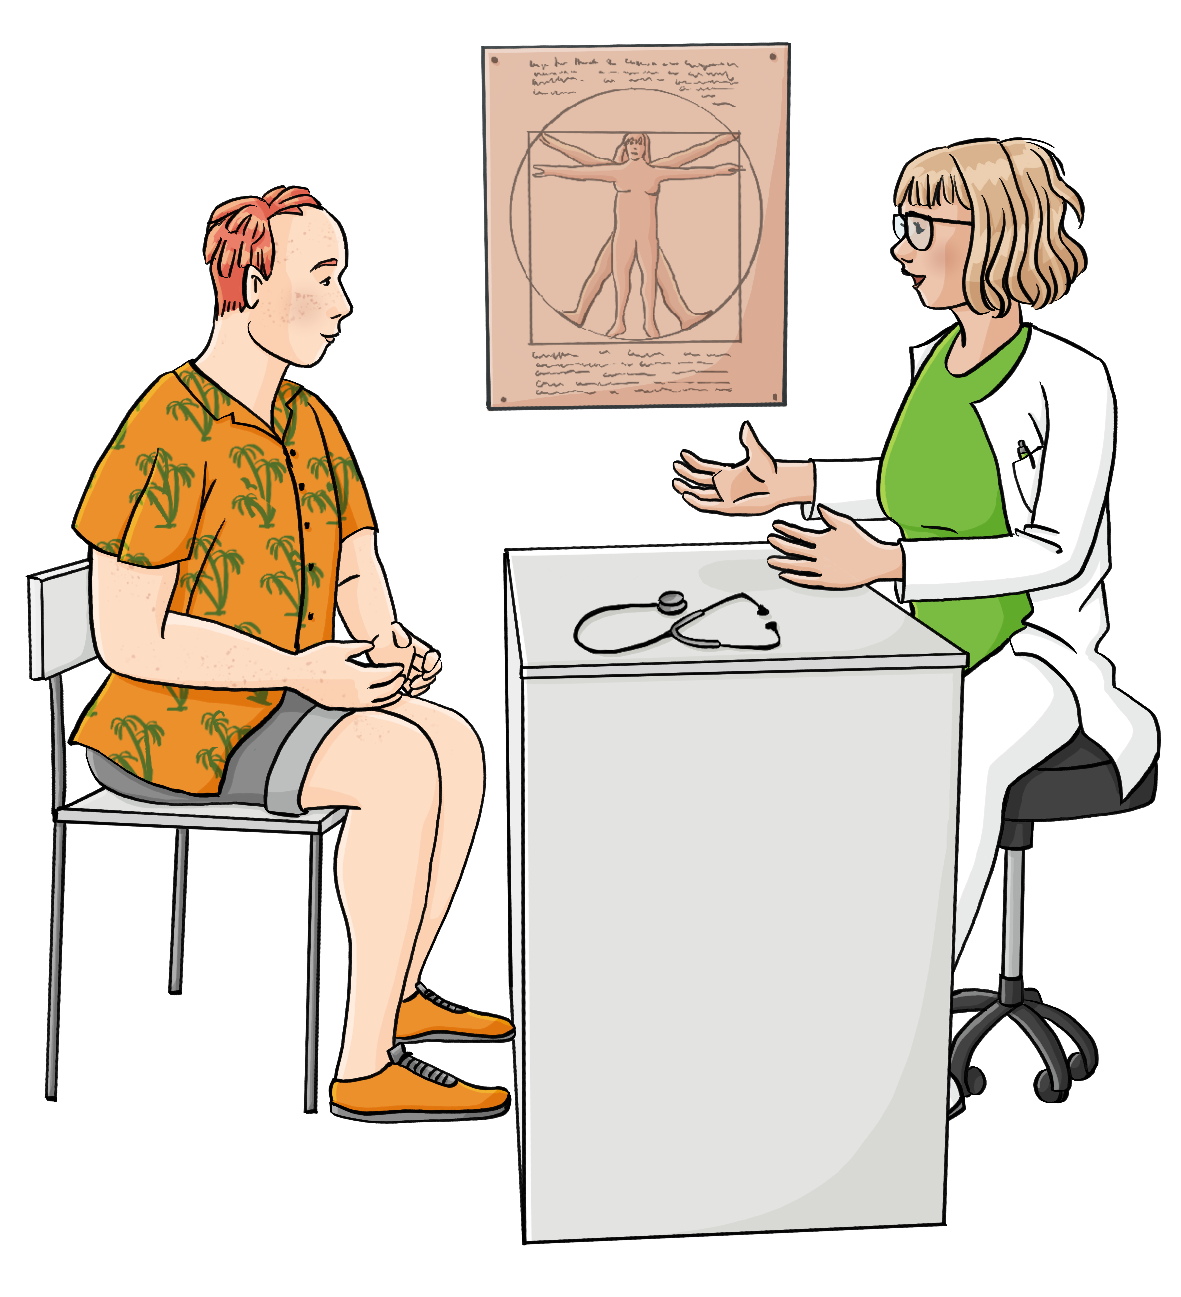 Eine Frau im hellgrünen Poloshirt, weißer Hose und weißem Kittel sitzt am Schreibtisch, über der Stuhllehne hängt ein weißer Kittel. Gegenüber sitzt ein Mann in Sommerkleidung. Auf dem Schreibtisch liegt ein Stethoskop, an der Wand hängt ein Anatomieposter. 